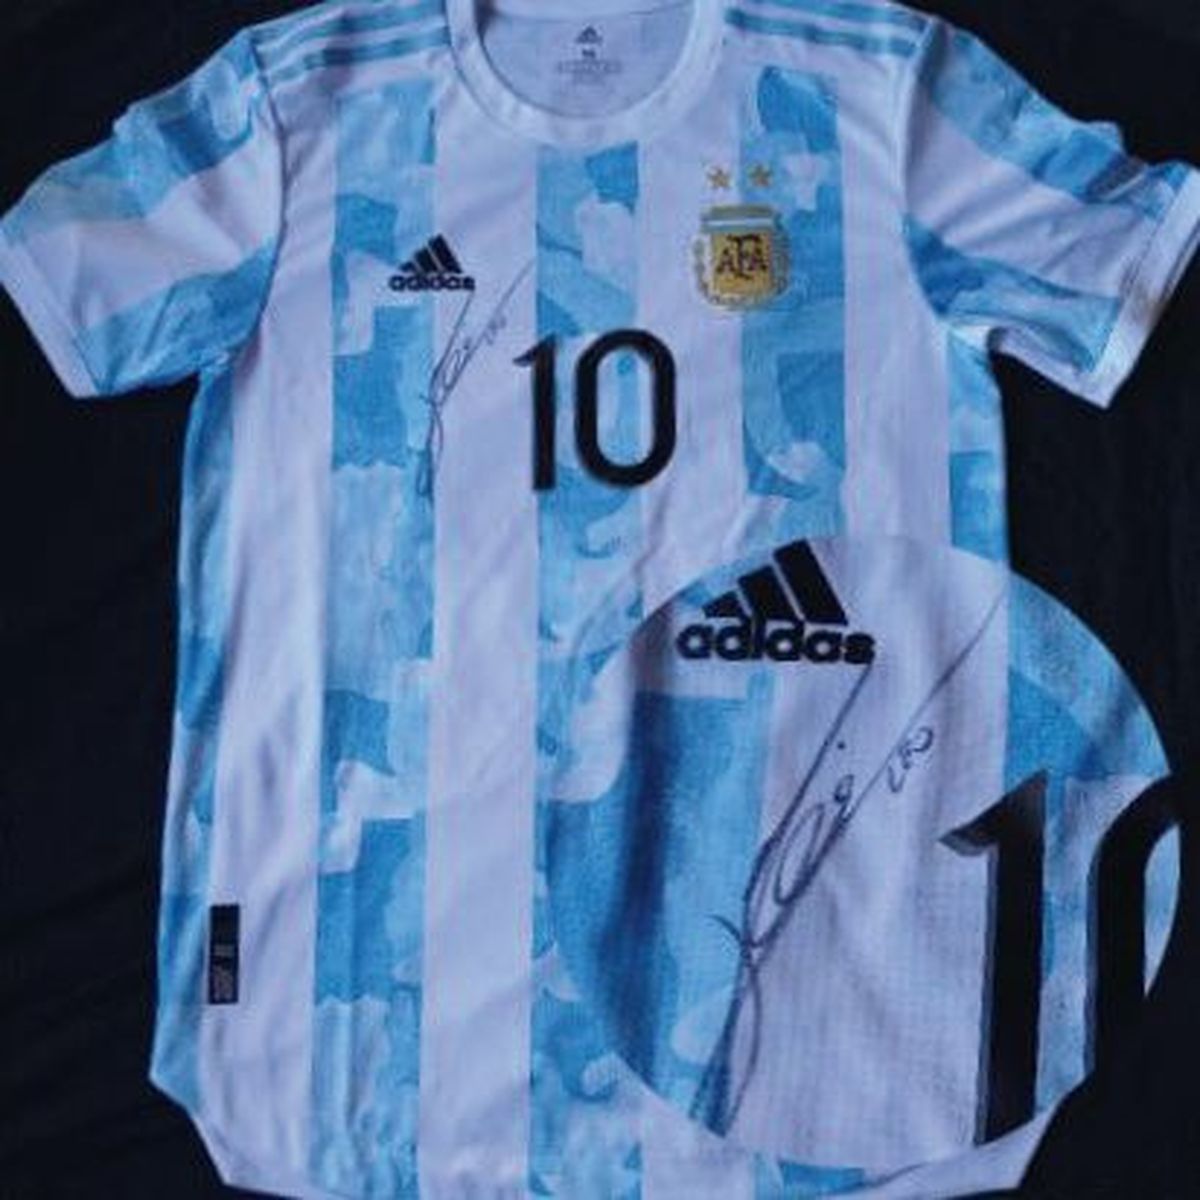 La camiseta autografiada por Lionel Messi que fue sorteada por la ONG de Esteban Echeverría.